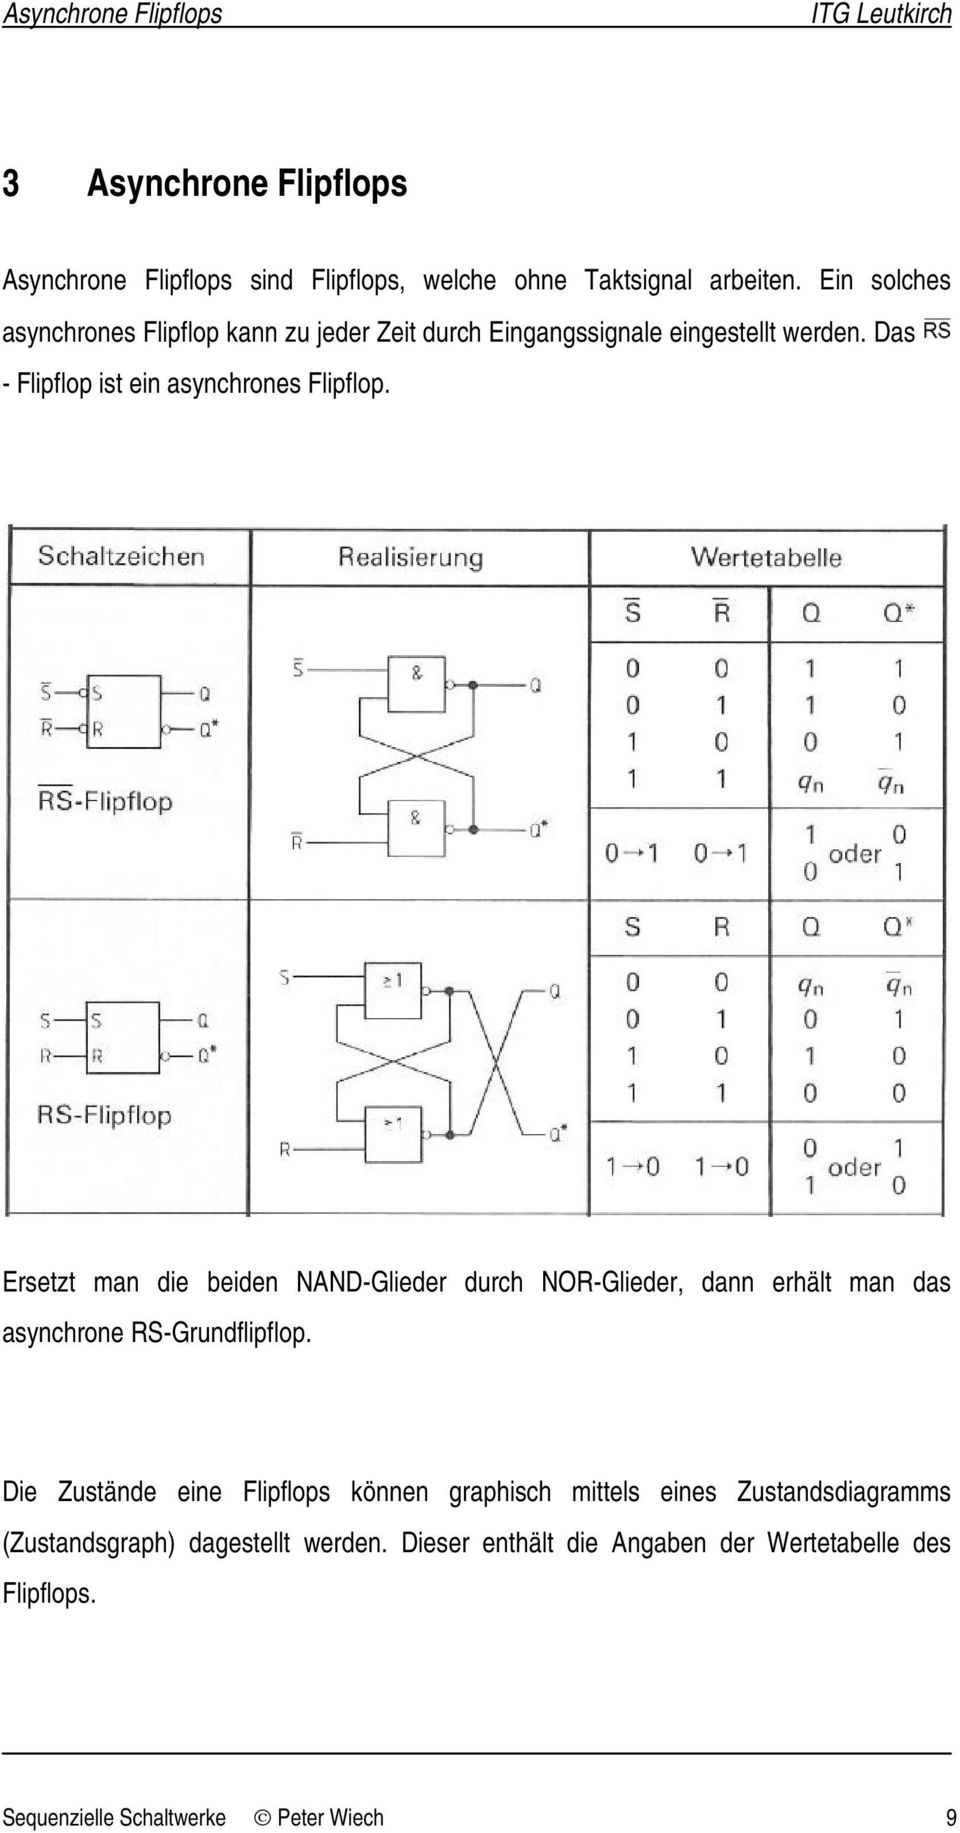 Ersetzt man die beiden NAND-Glieder durch NOR-Glieder, dann erhält man das asynchrone RS-Grundflipflop.